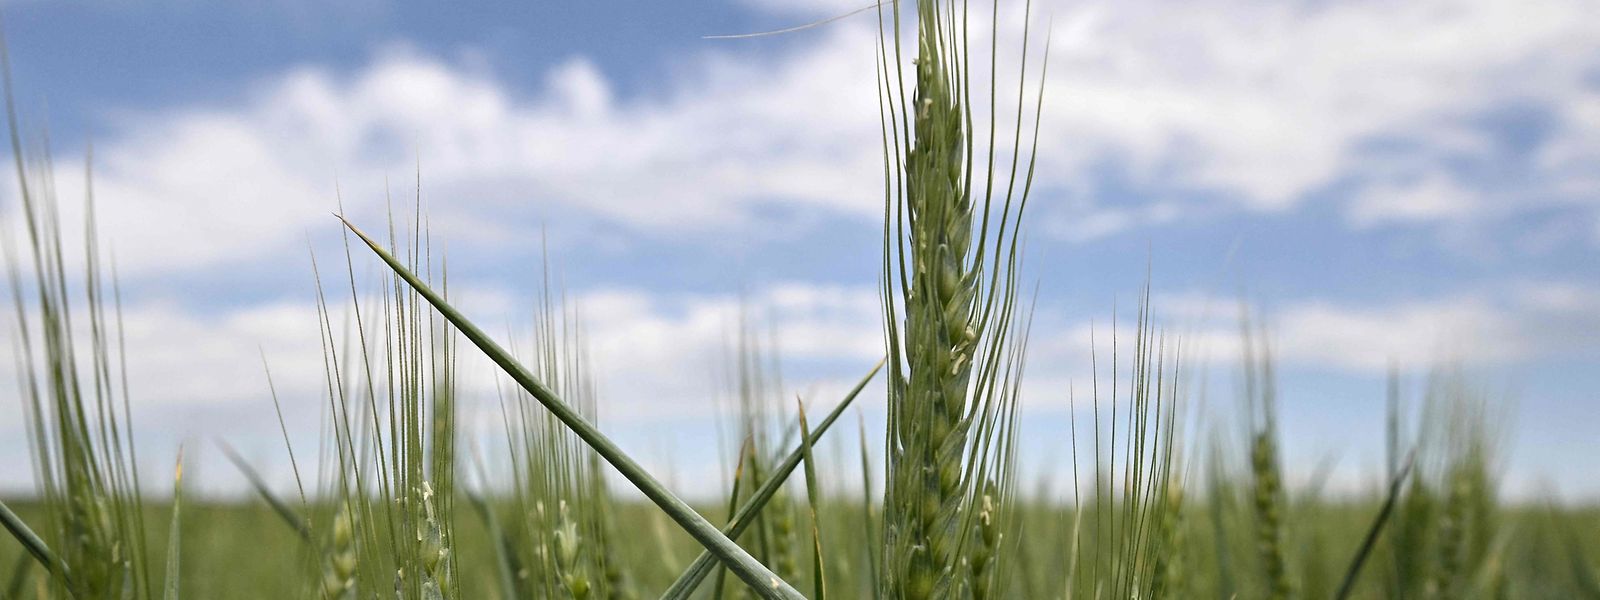 A Rússia acusa o Ocidente de provocar uma crise alimentar na Ucrânia ao trocar armas por cereais.